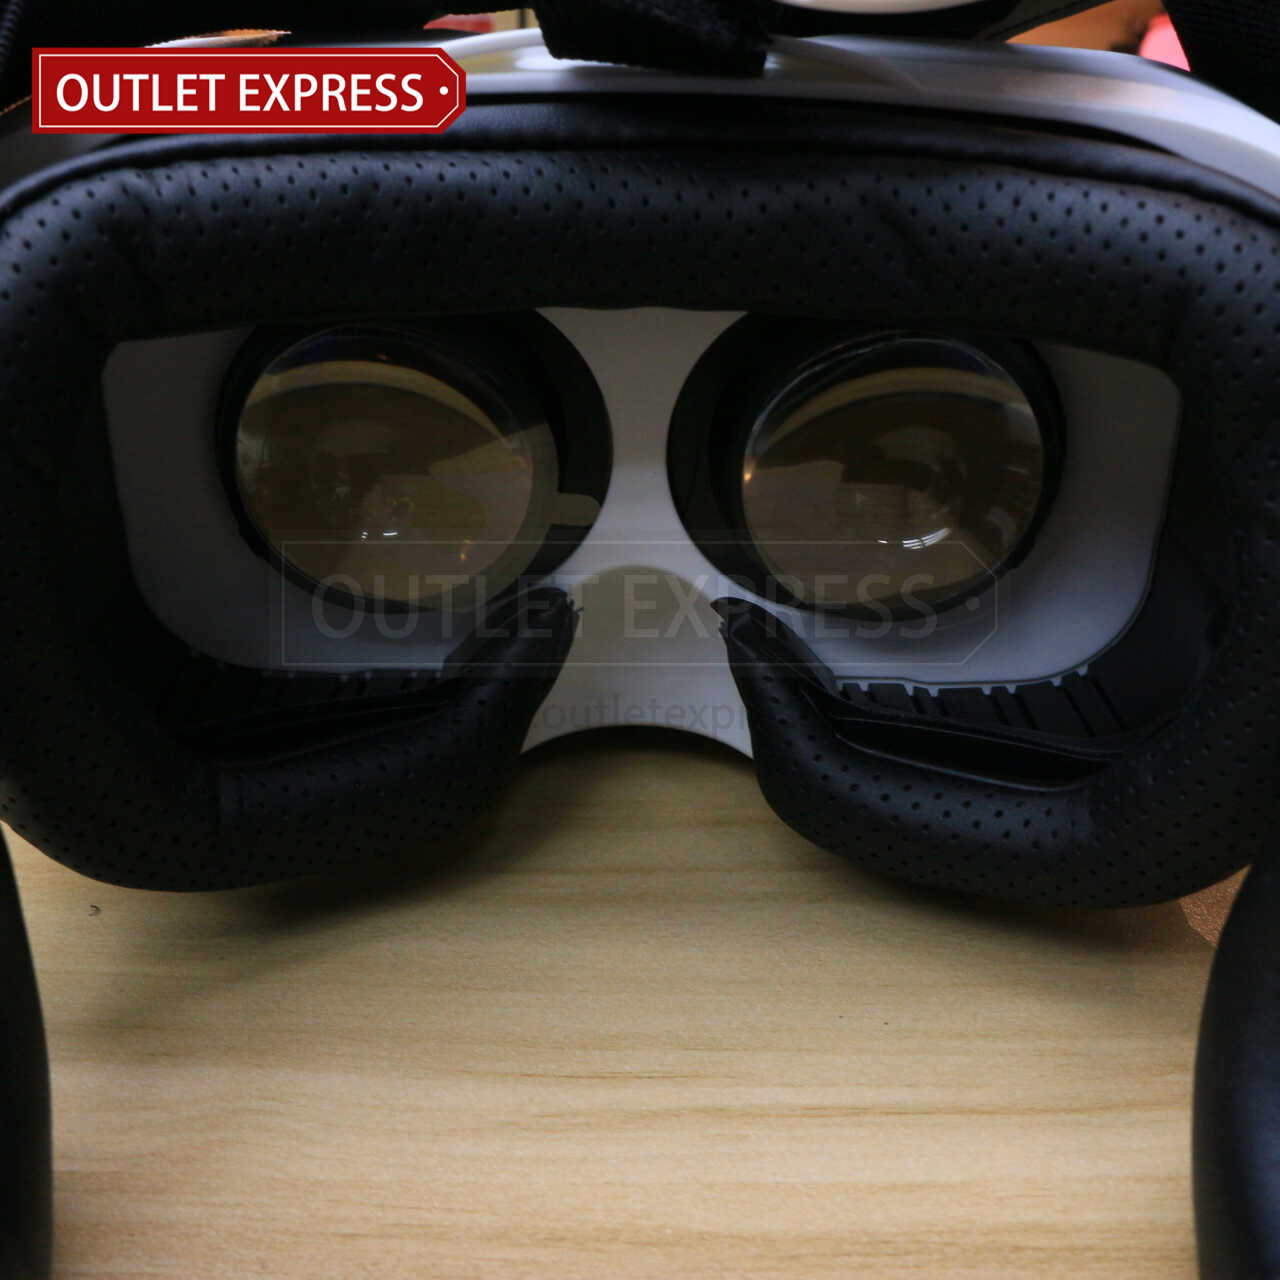 小宅魔鏡Z4 VR虛擬實境眼鏡 眼鏡位置- Outlet Express HK生活百貨城實拍相片